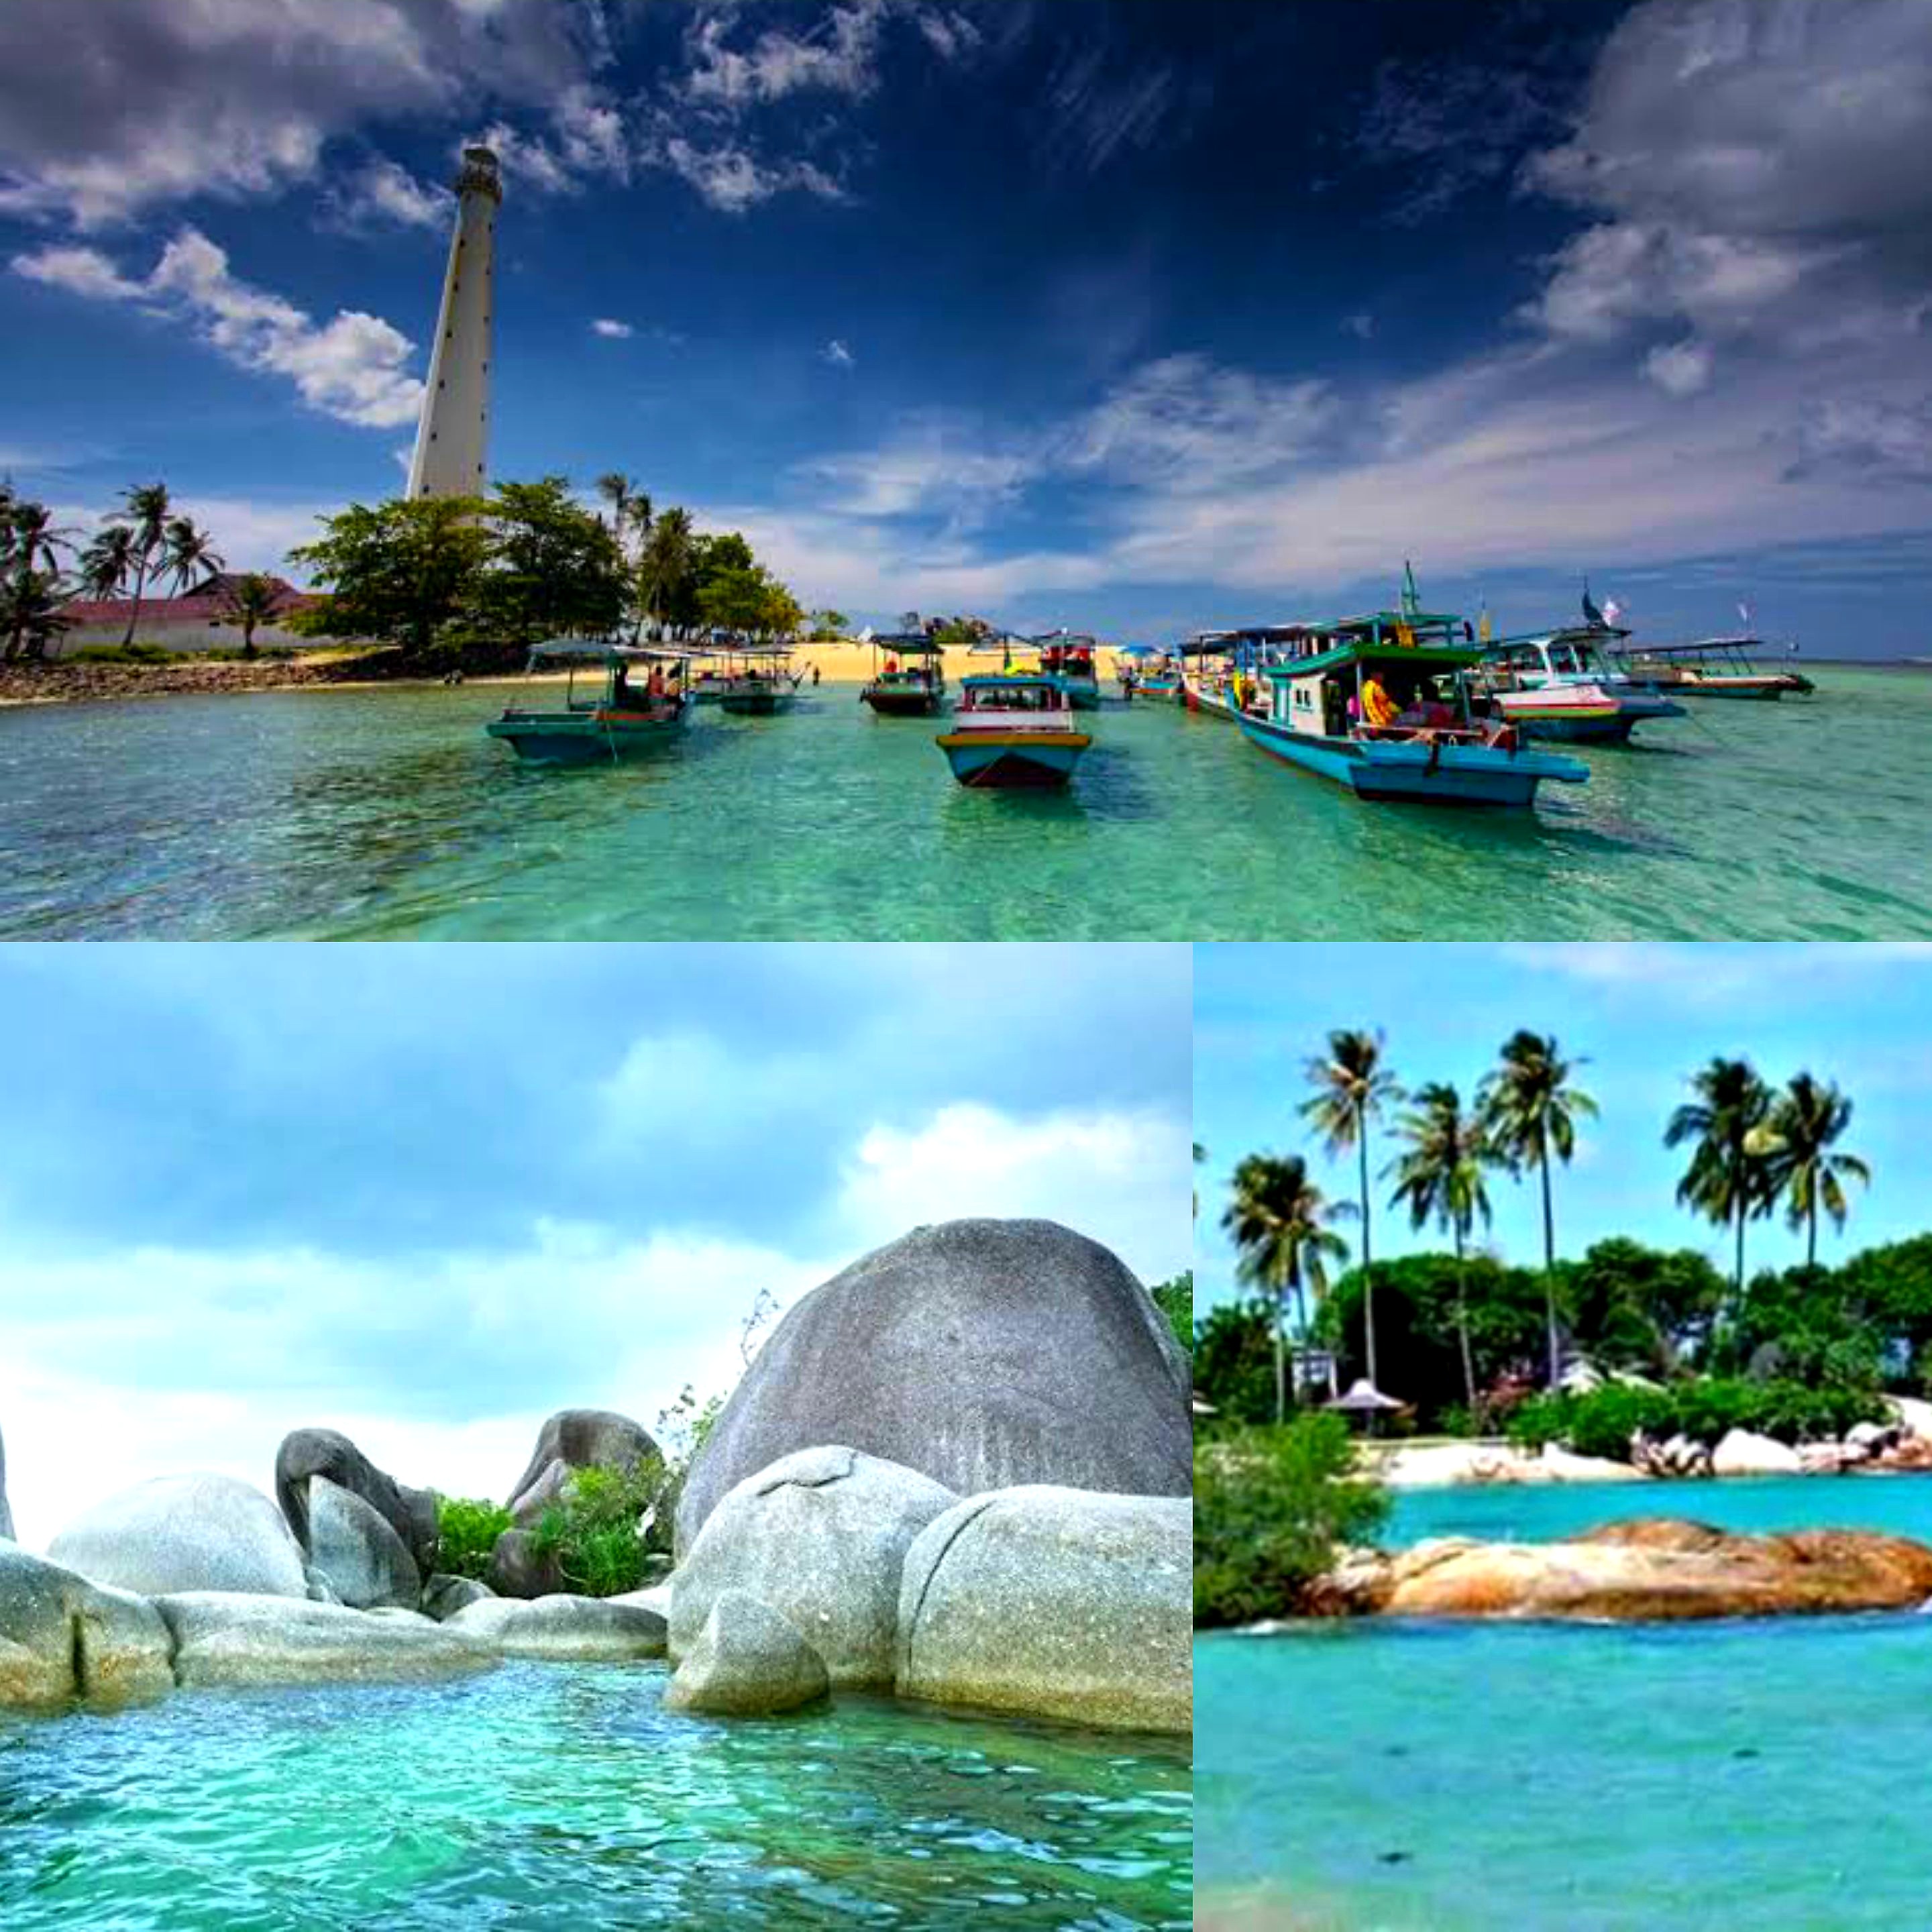 Keajaiban Alami Pulau Bangka Jadi Destinasi Wisata Luar Biasa. Ini 7 Spot Magnet Utama Wisatanya!